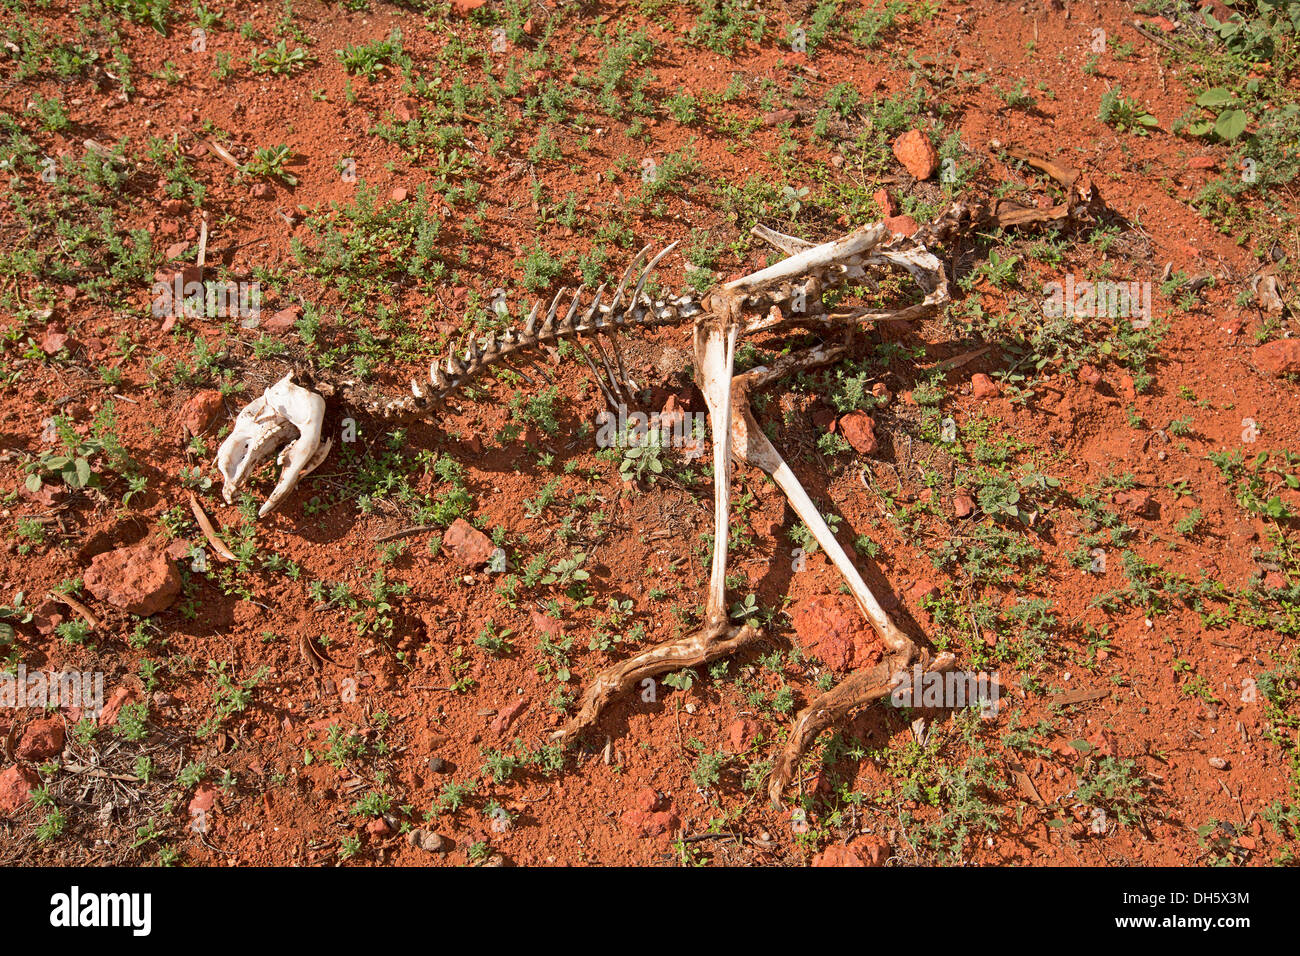 https://c8.alamy.com/compde/dh5x3m/skelett-von-kanguru-auf-roter-erde-des-australischen-outback-symbol-der-risiken-reisende-gesicht-als-unvorbereitet-fur-eine-wuste-reise-dh5x3m.jpg